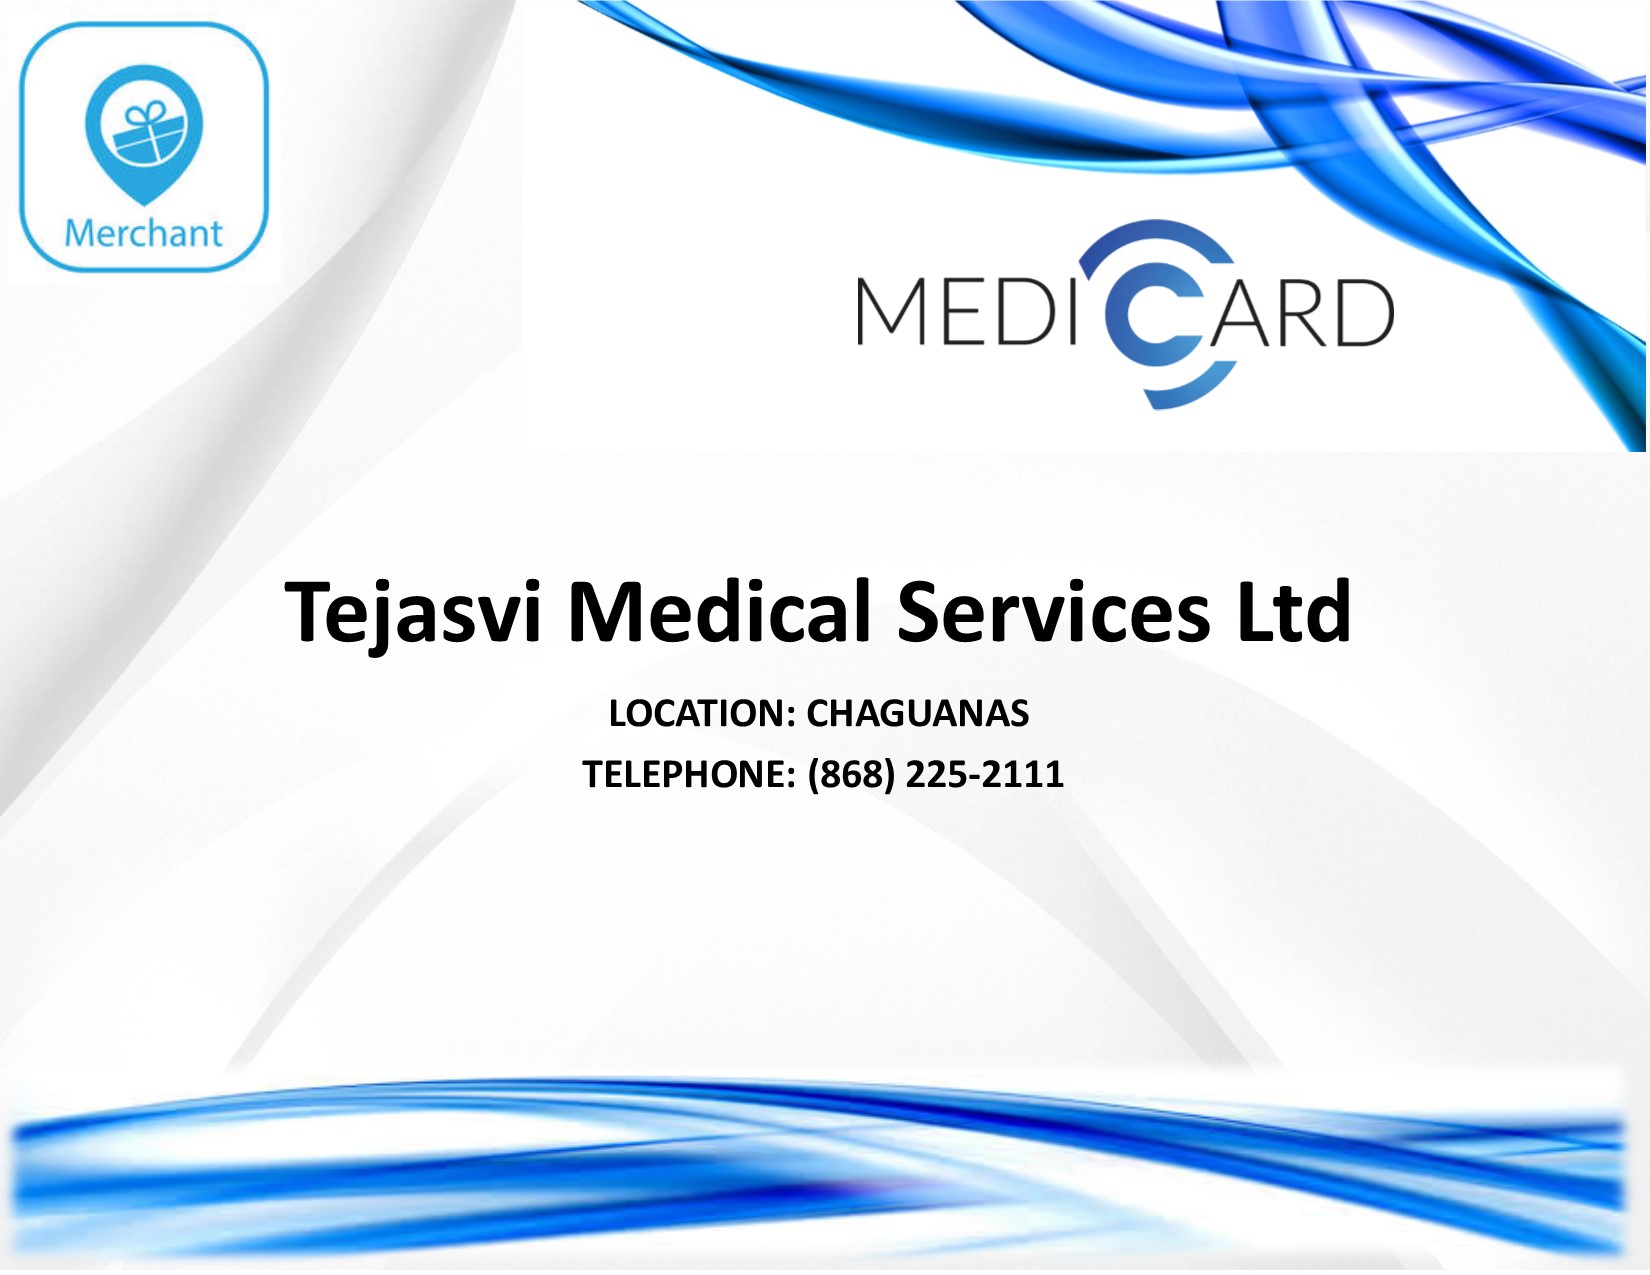 Tejasvi Medical Services